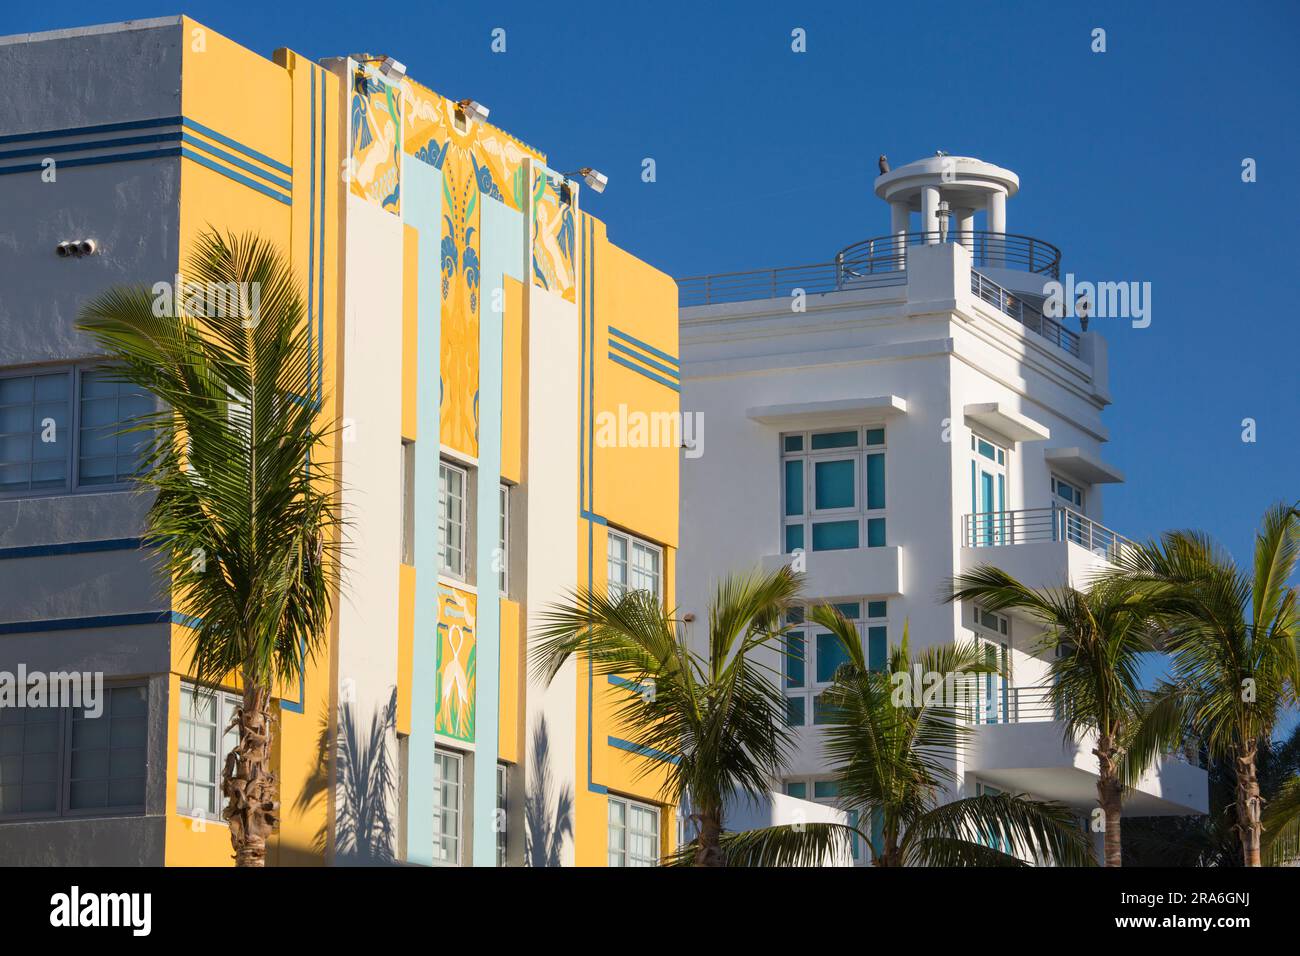 Miami Beach, Floride, États-Unis. Façades Art déco colorées, Ocean Drive, quartier architectural de Miami Beach, South Beach. Banque D'Images